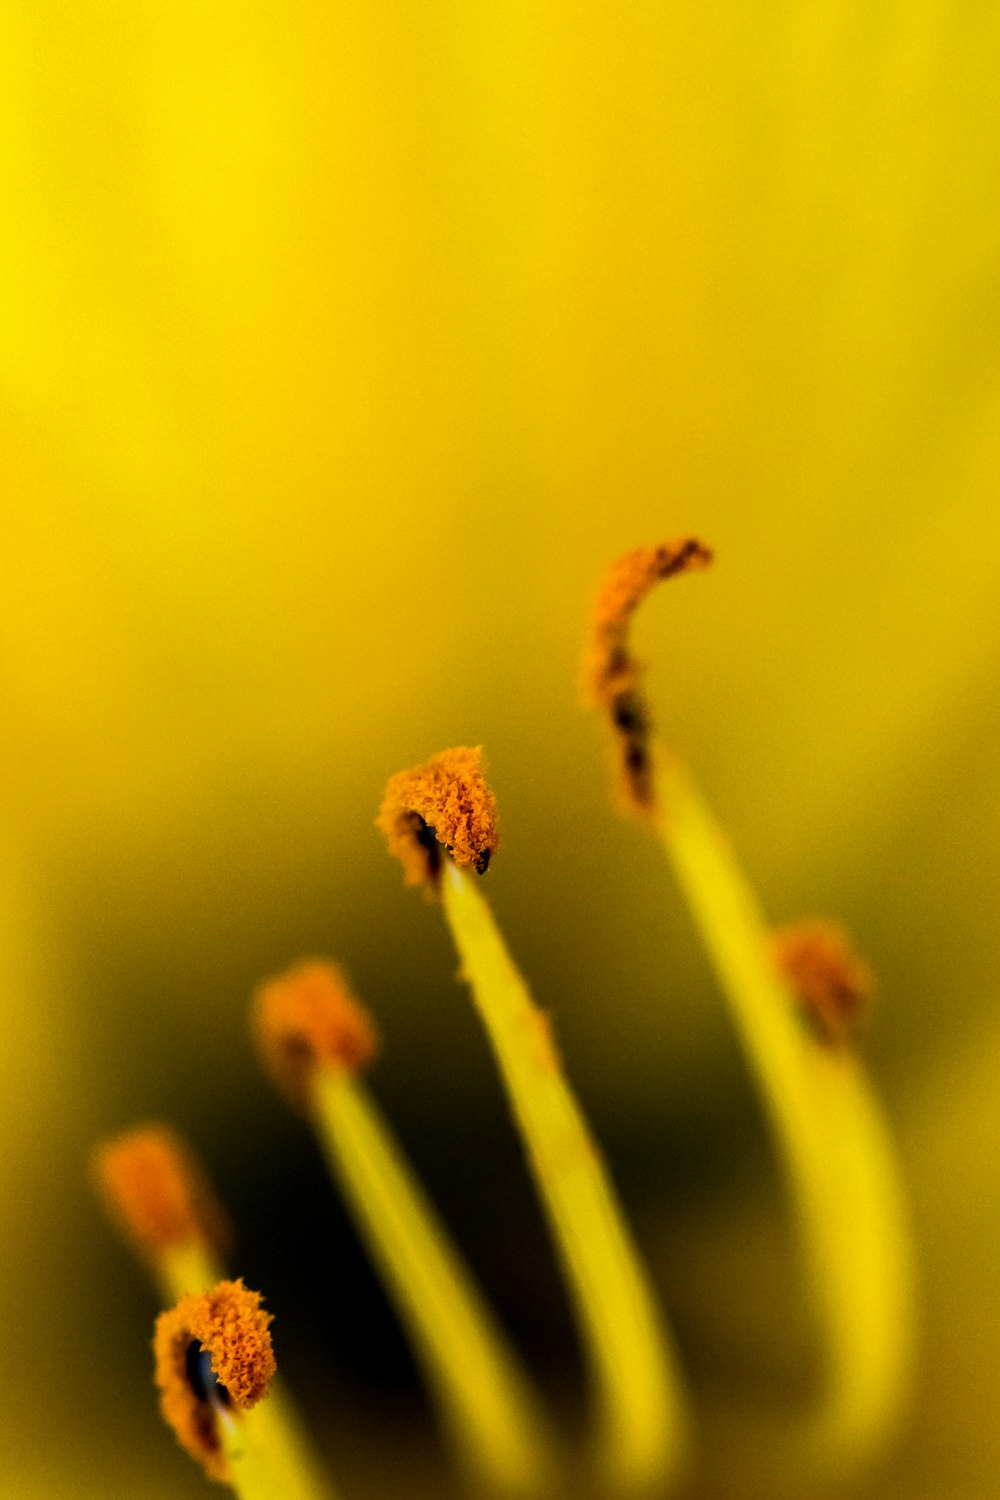 macro photography of flower pollen